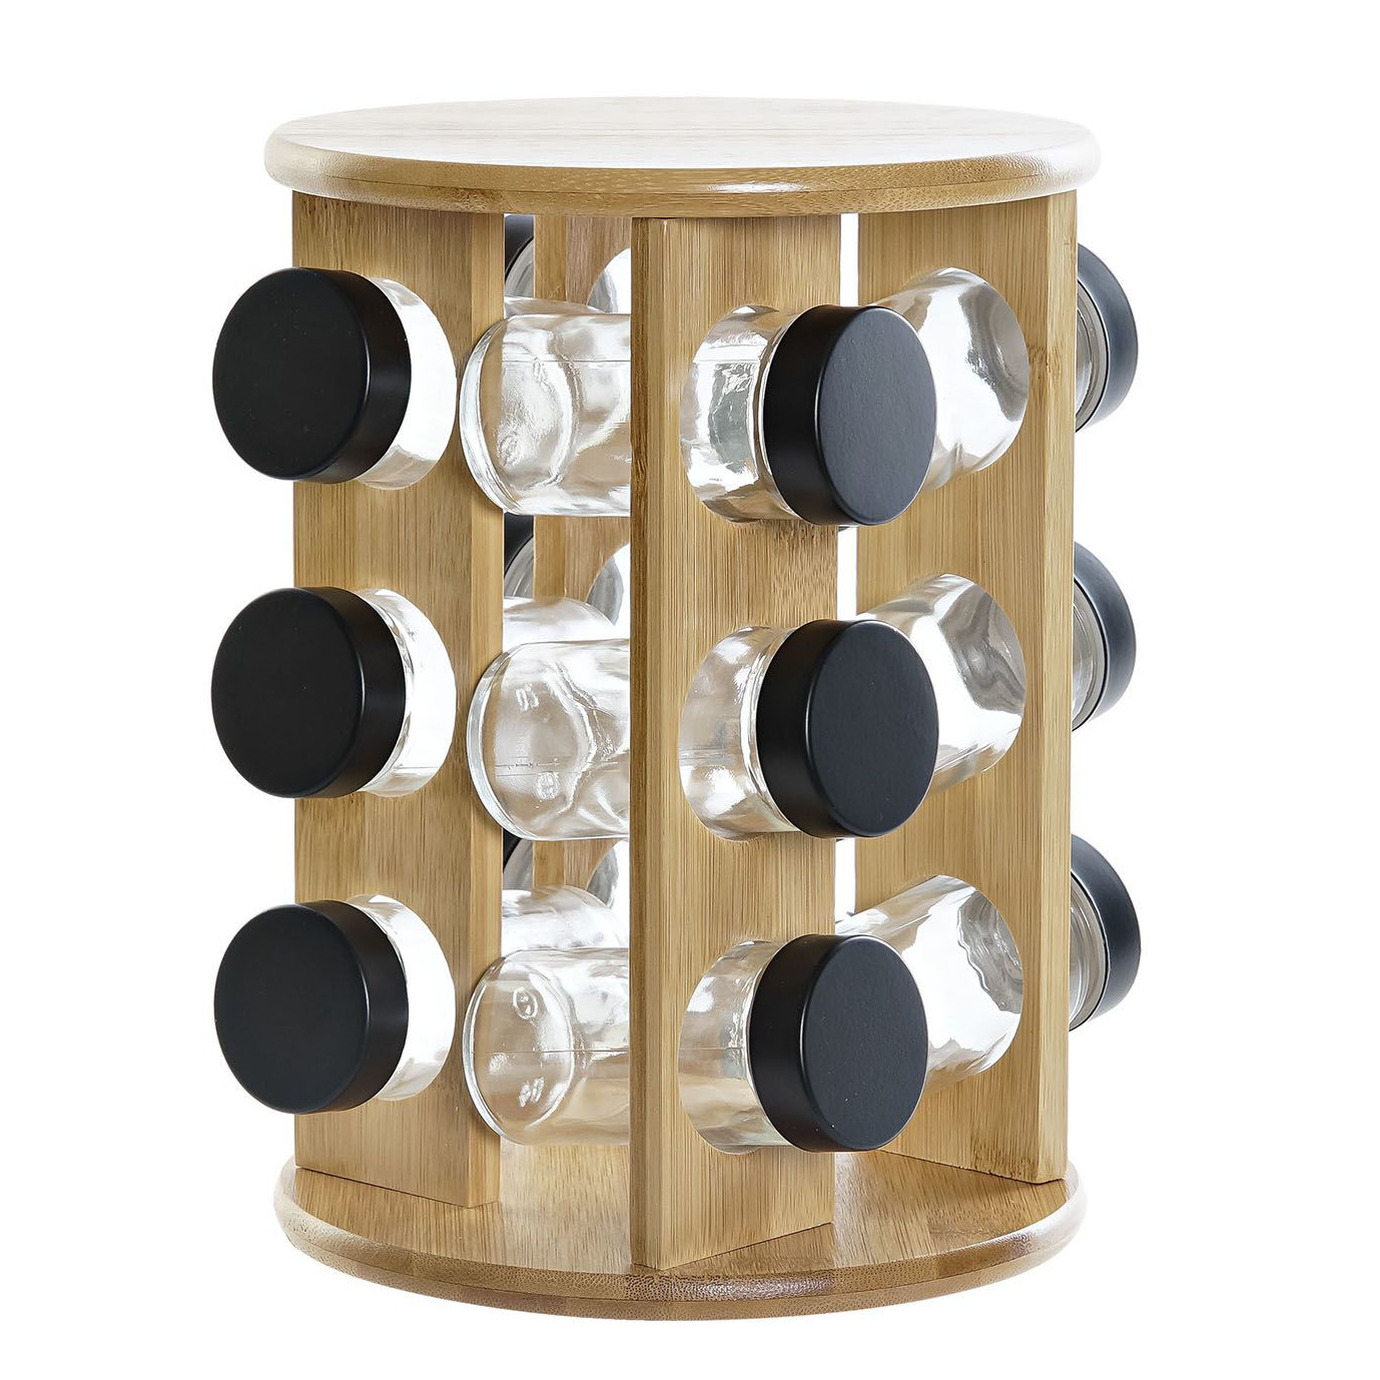 Items Bamboe houten kruidenrek/specerijenrek met 12 glazen potten 18 x 18 x 25 cm -